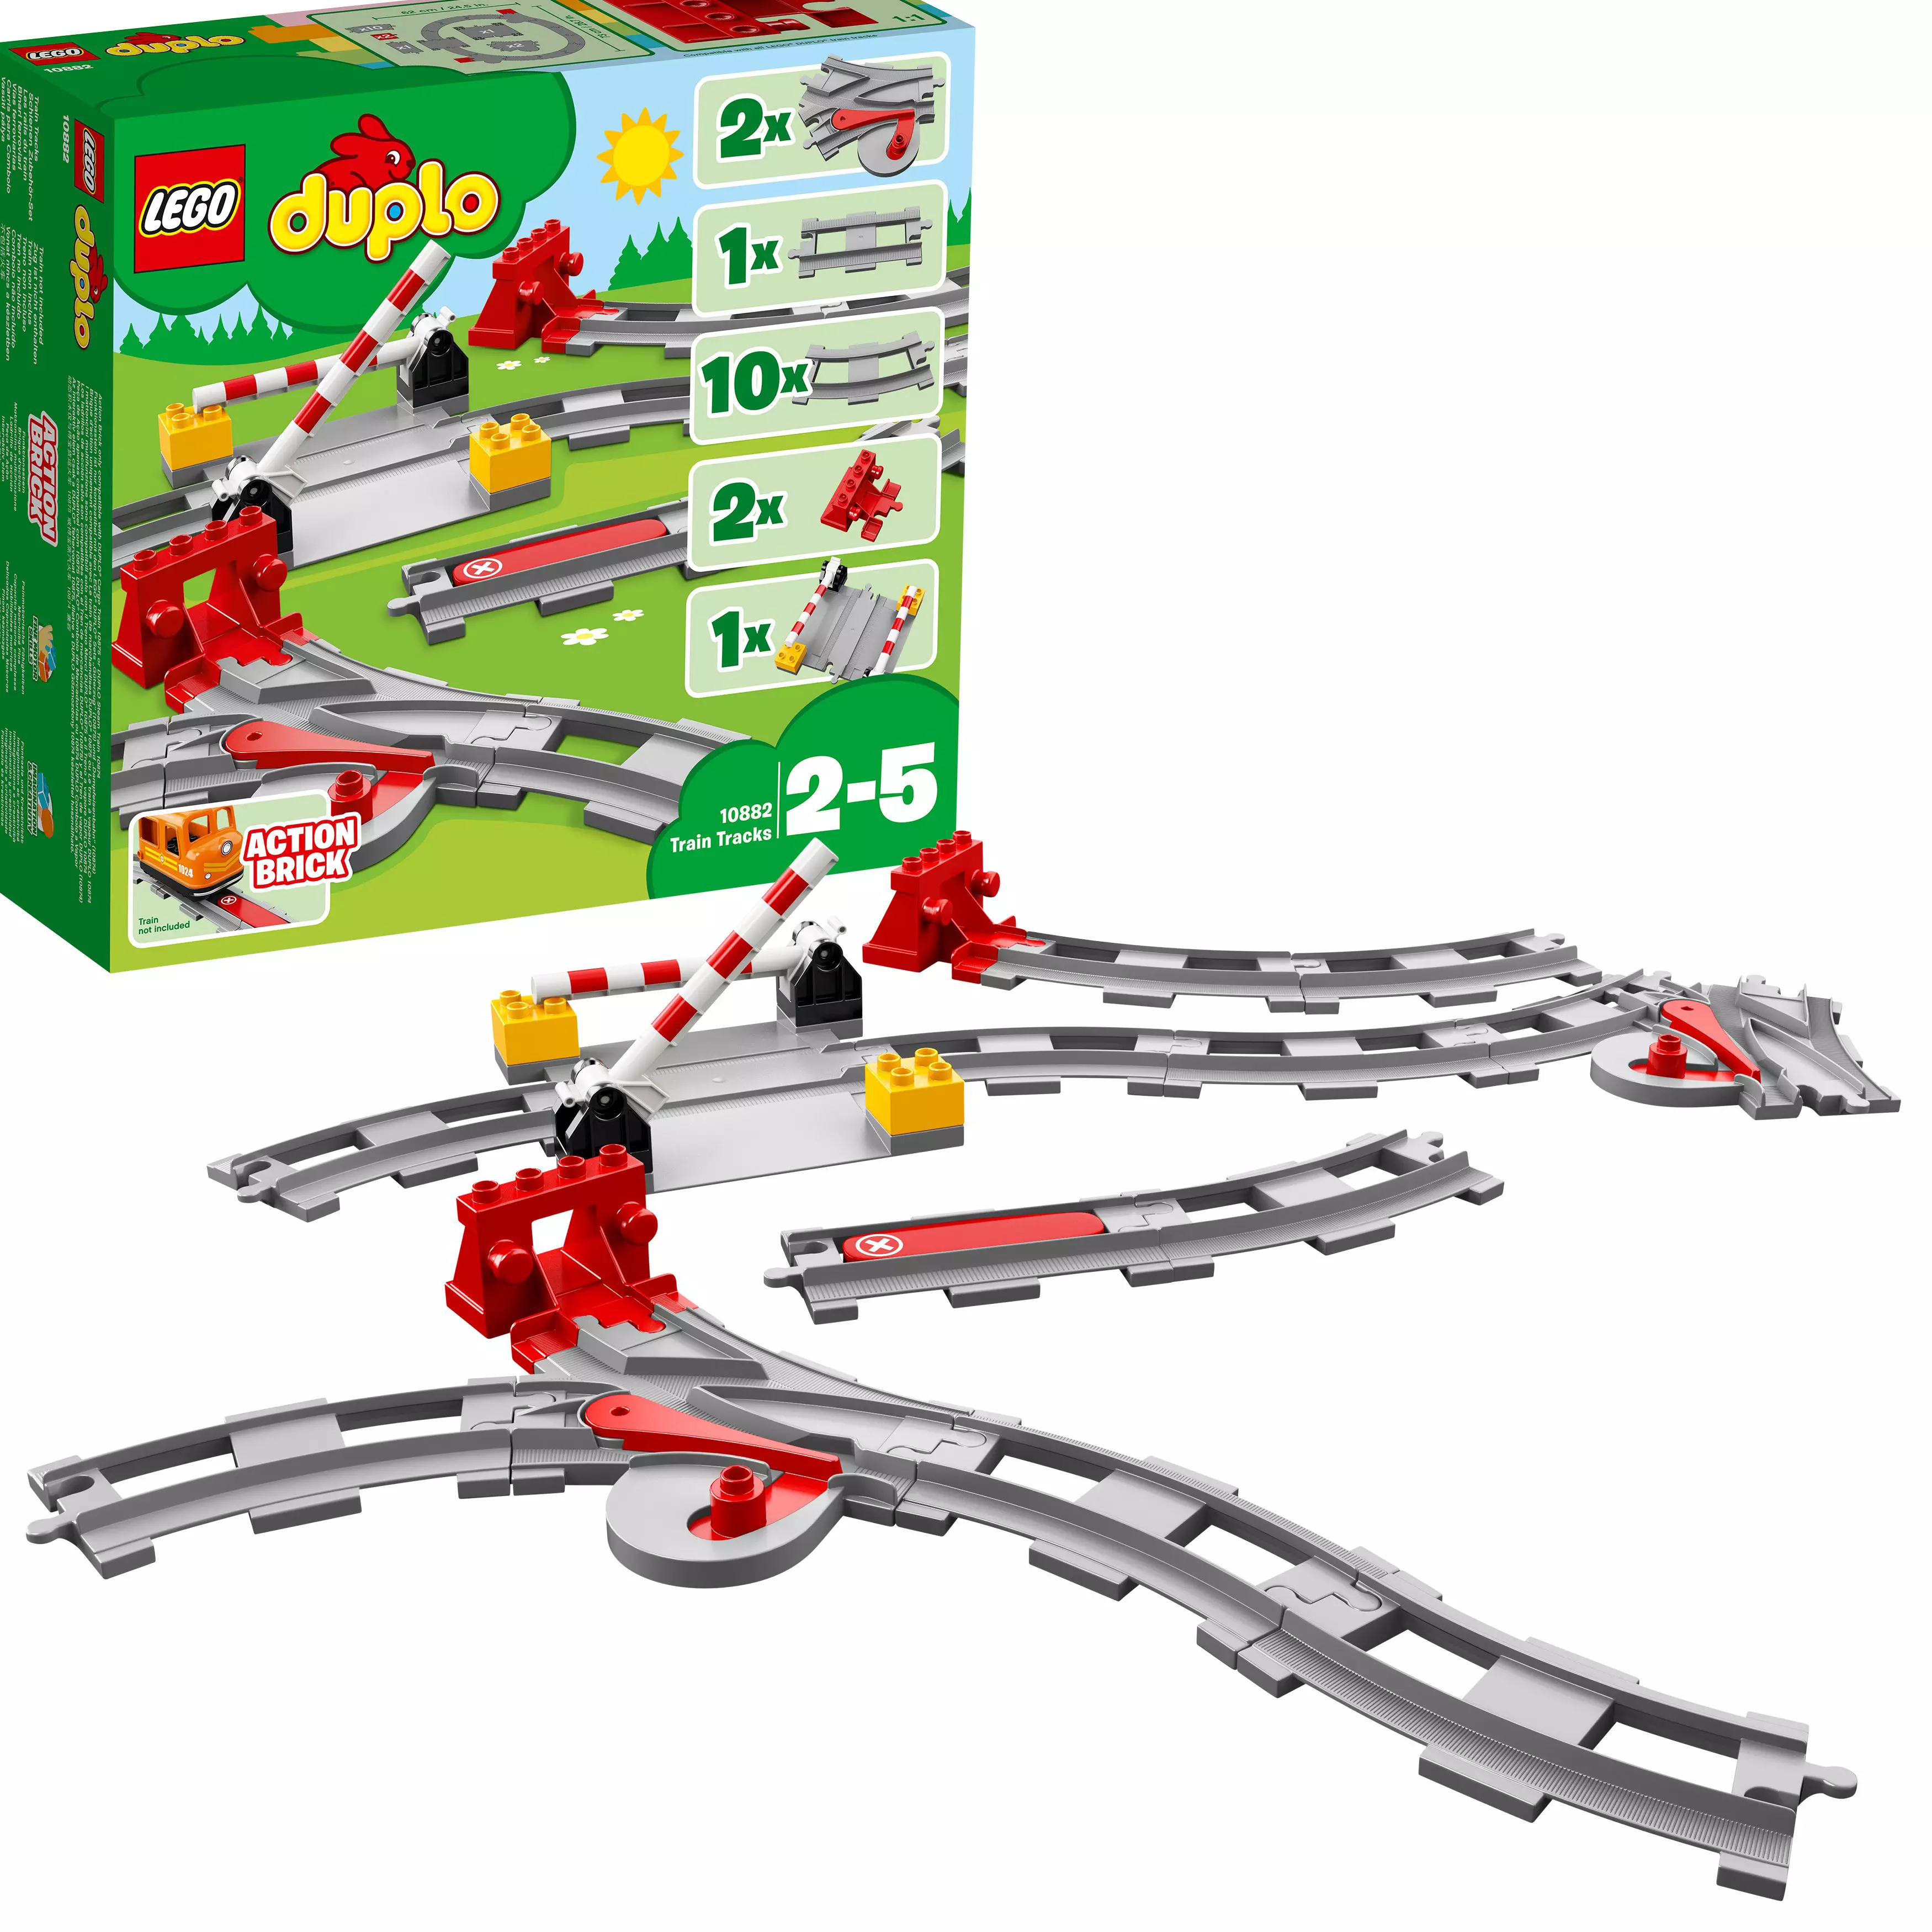 Lego Duplo Junarata 10882